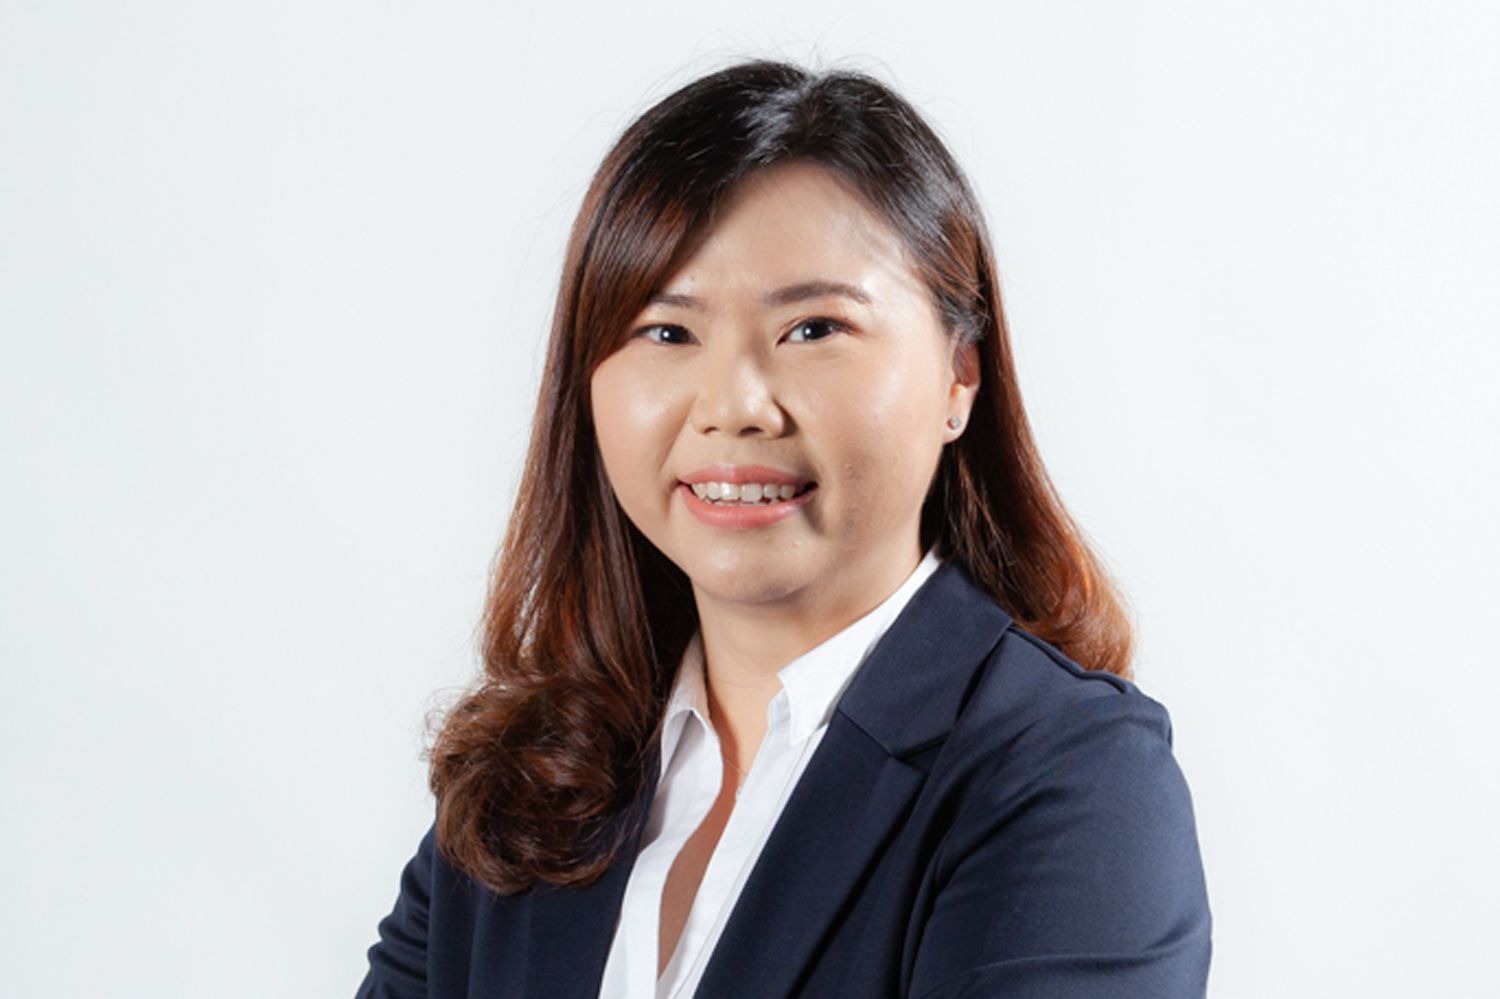 คุณพิมพ์พร สุพพัตพงศ์ - ผู้ช่วยผู้อำนวยการ ที่ปรึกษาภาษี เคพีเอ็มจี ประเทศไทย